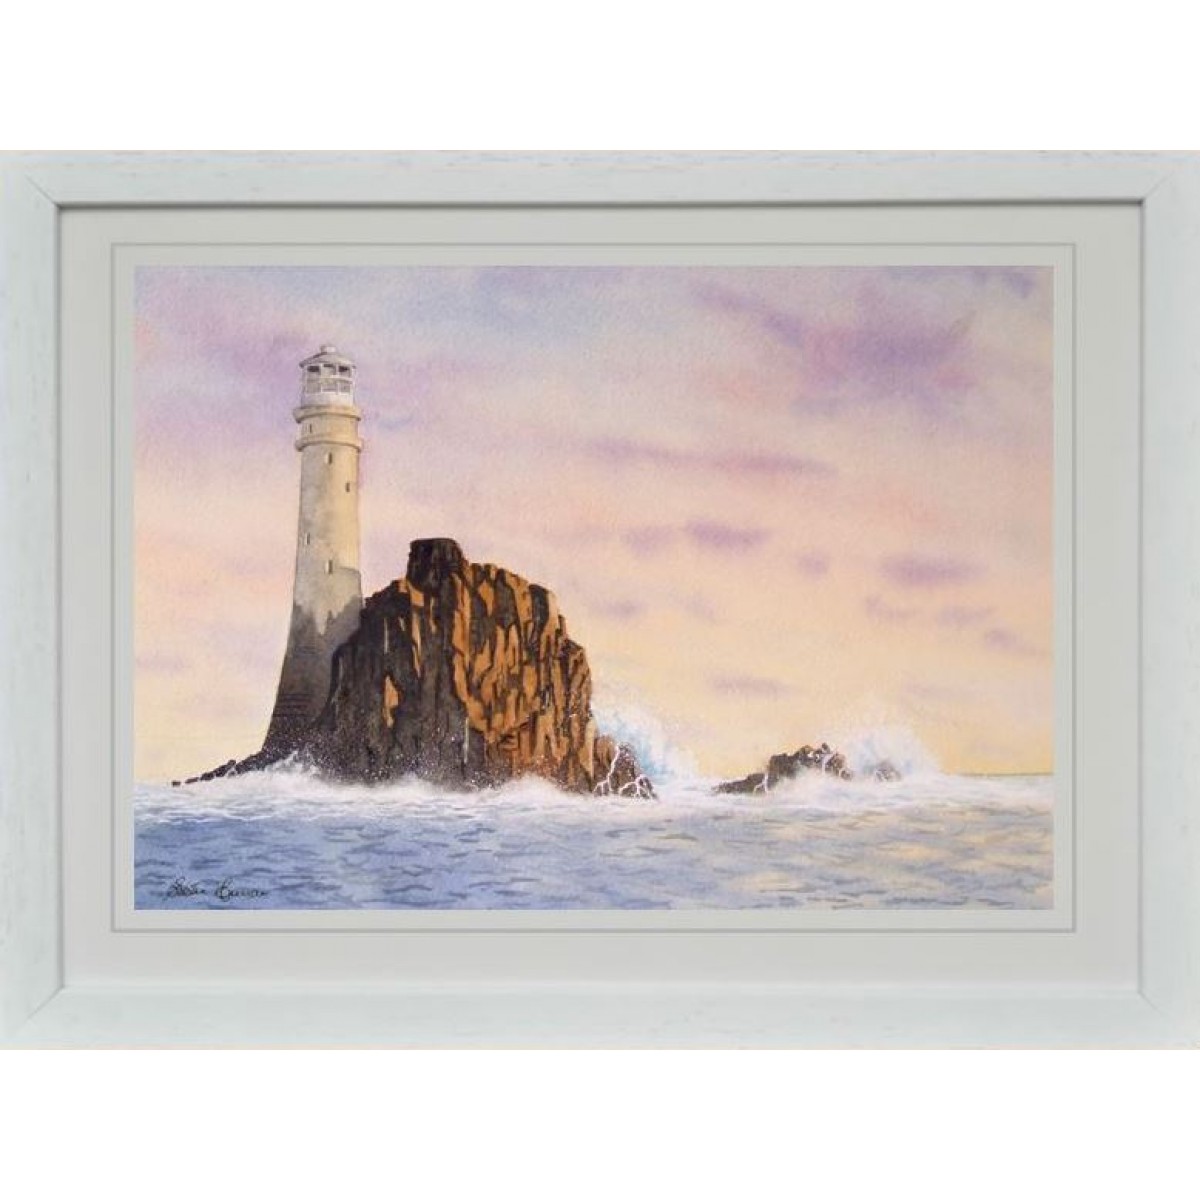 "Irelands Teardrop", Fastnet Rock Lighthouse, Co. Cork